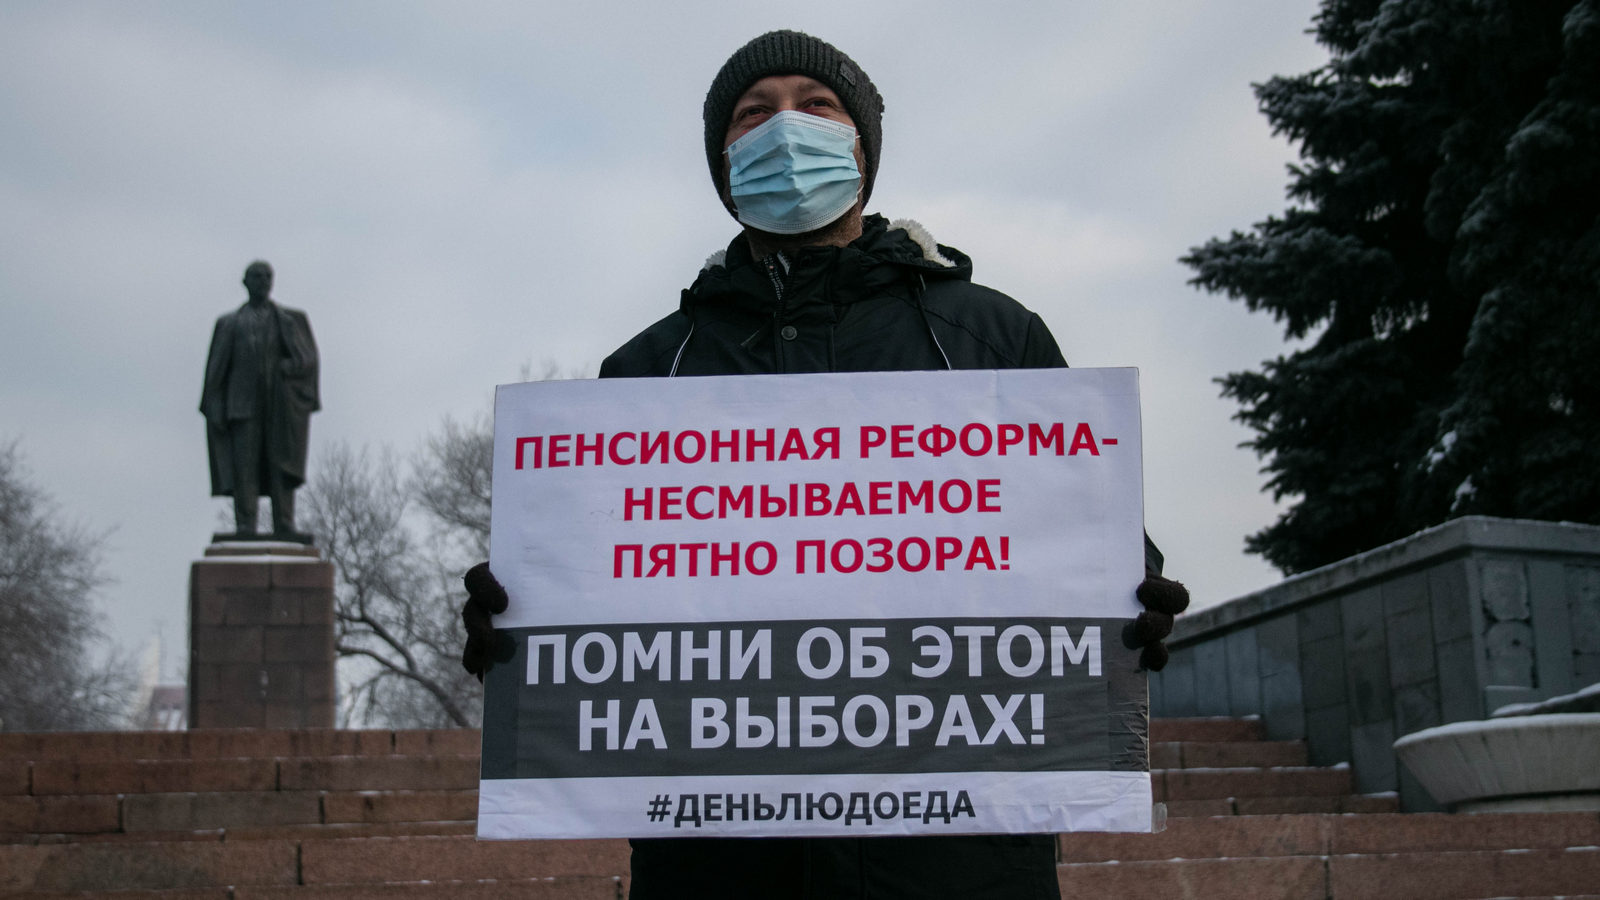 Пикет против пенсионной реформы в Омске. 03.12.2020